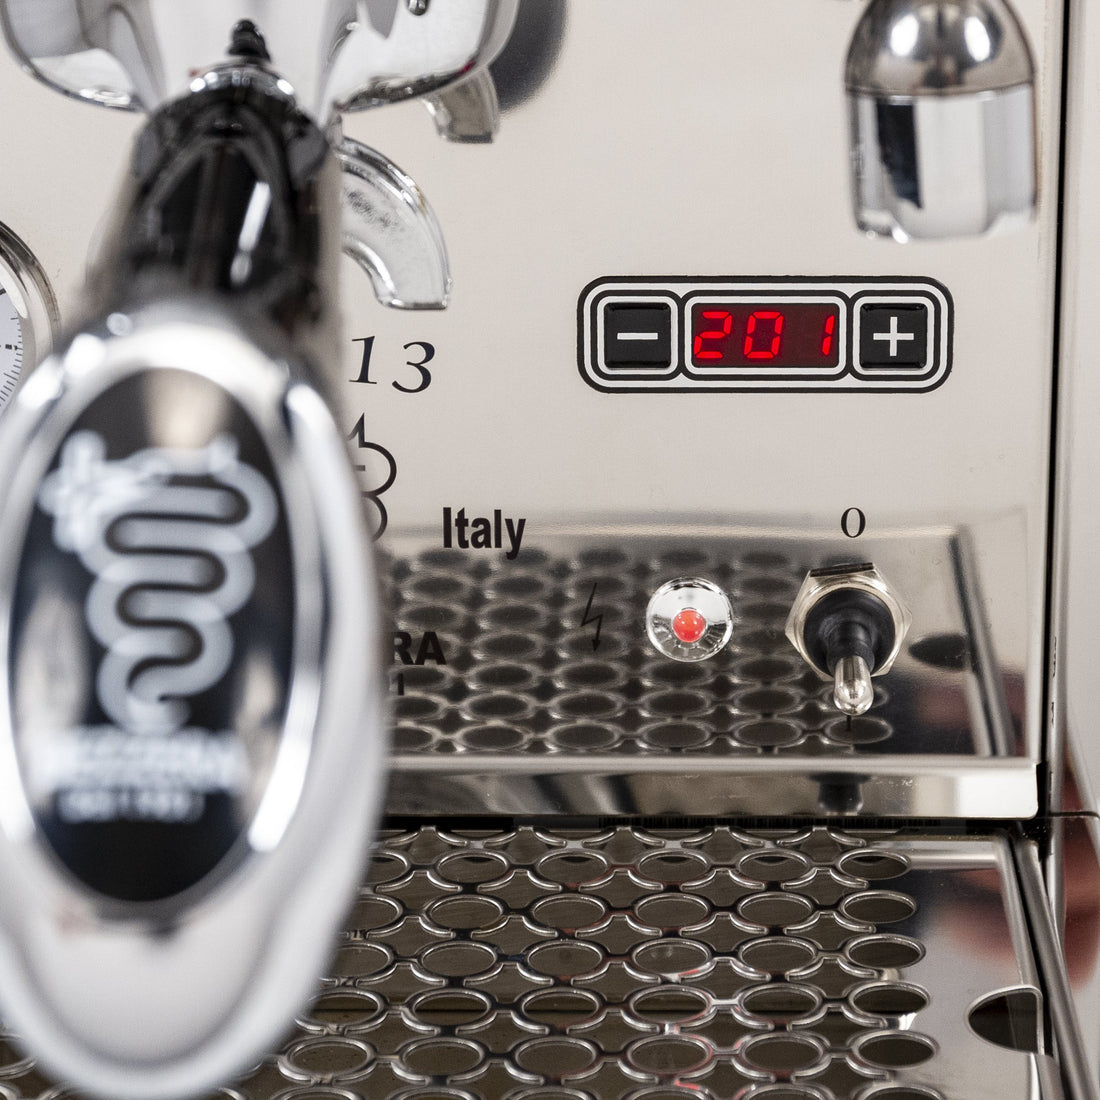 Bezzera BZ13 PM Espresso Machine - Special Edition